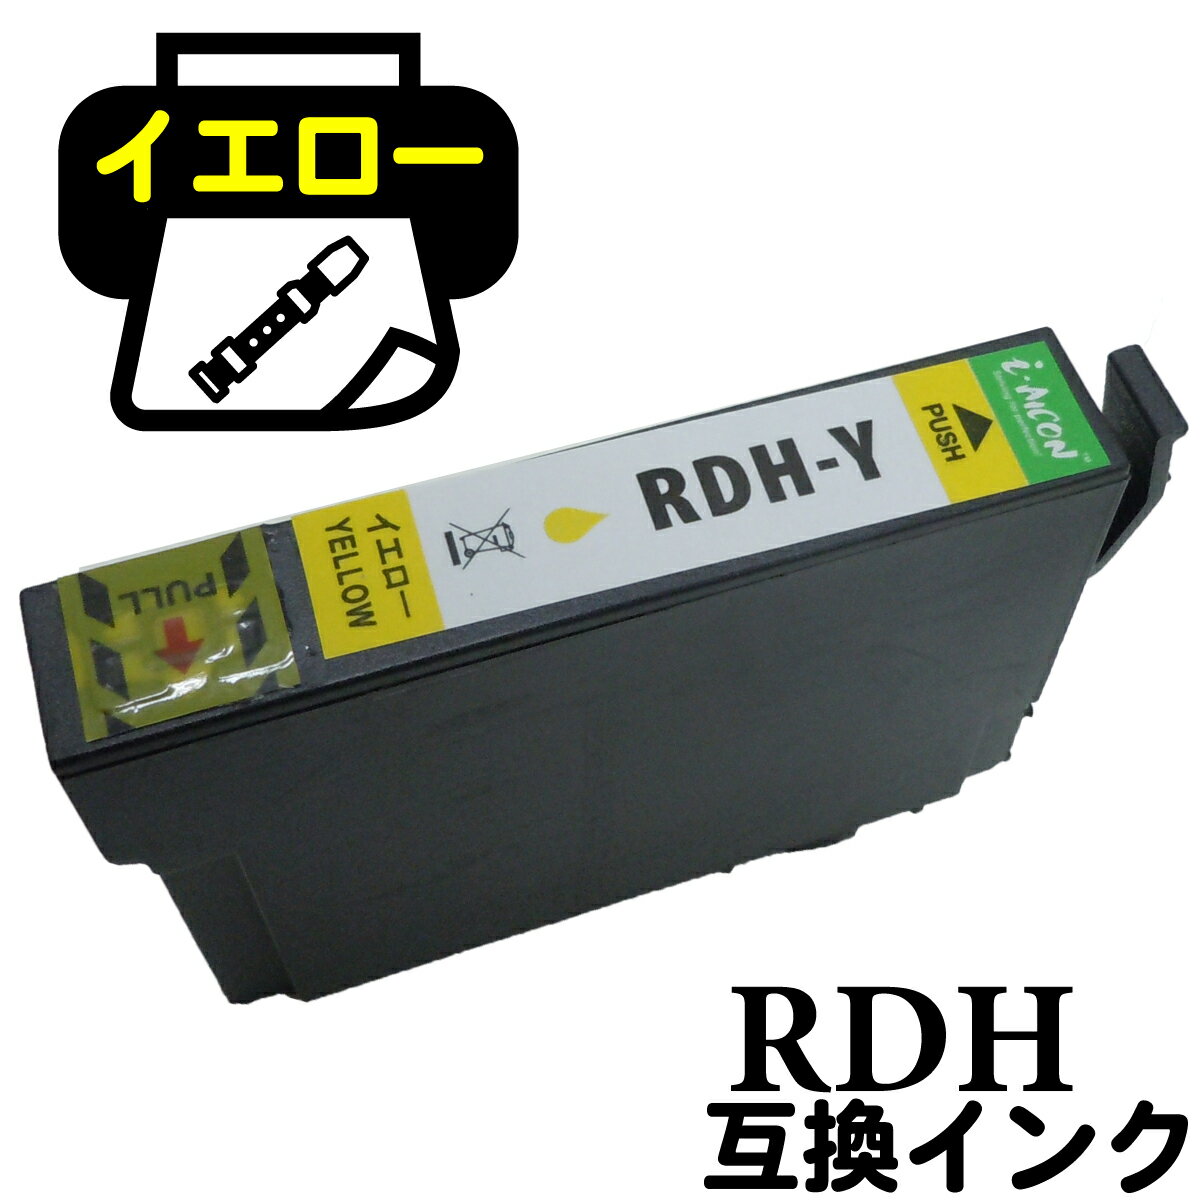 互換インクカートリッジ りこーだー ICチップ付 rdh RDHY RDH-Y 互換 リコーダー